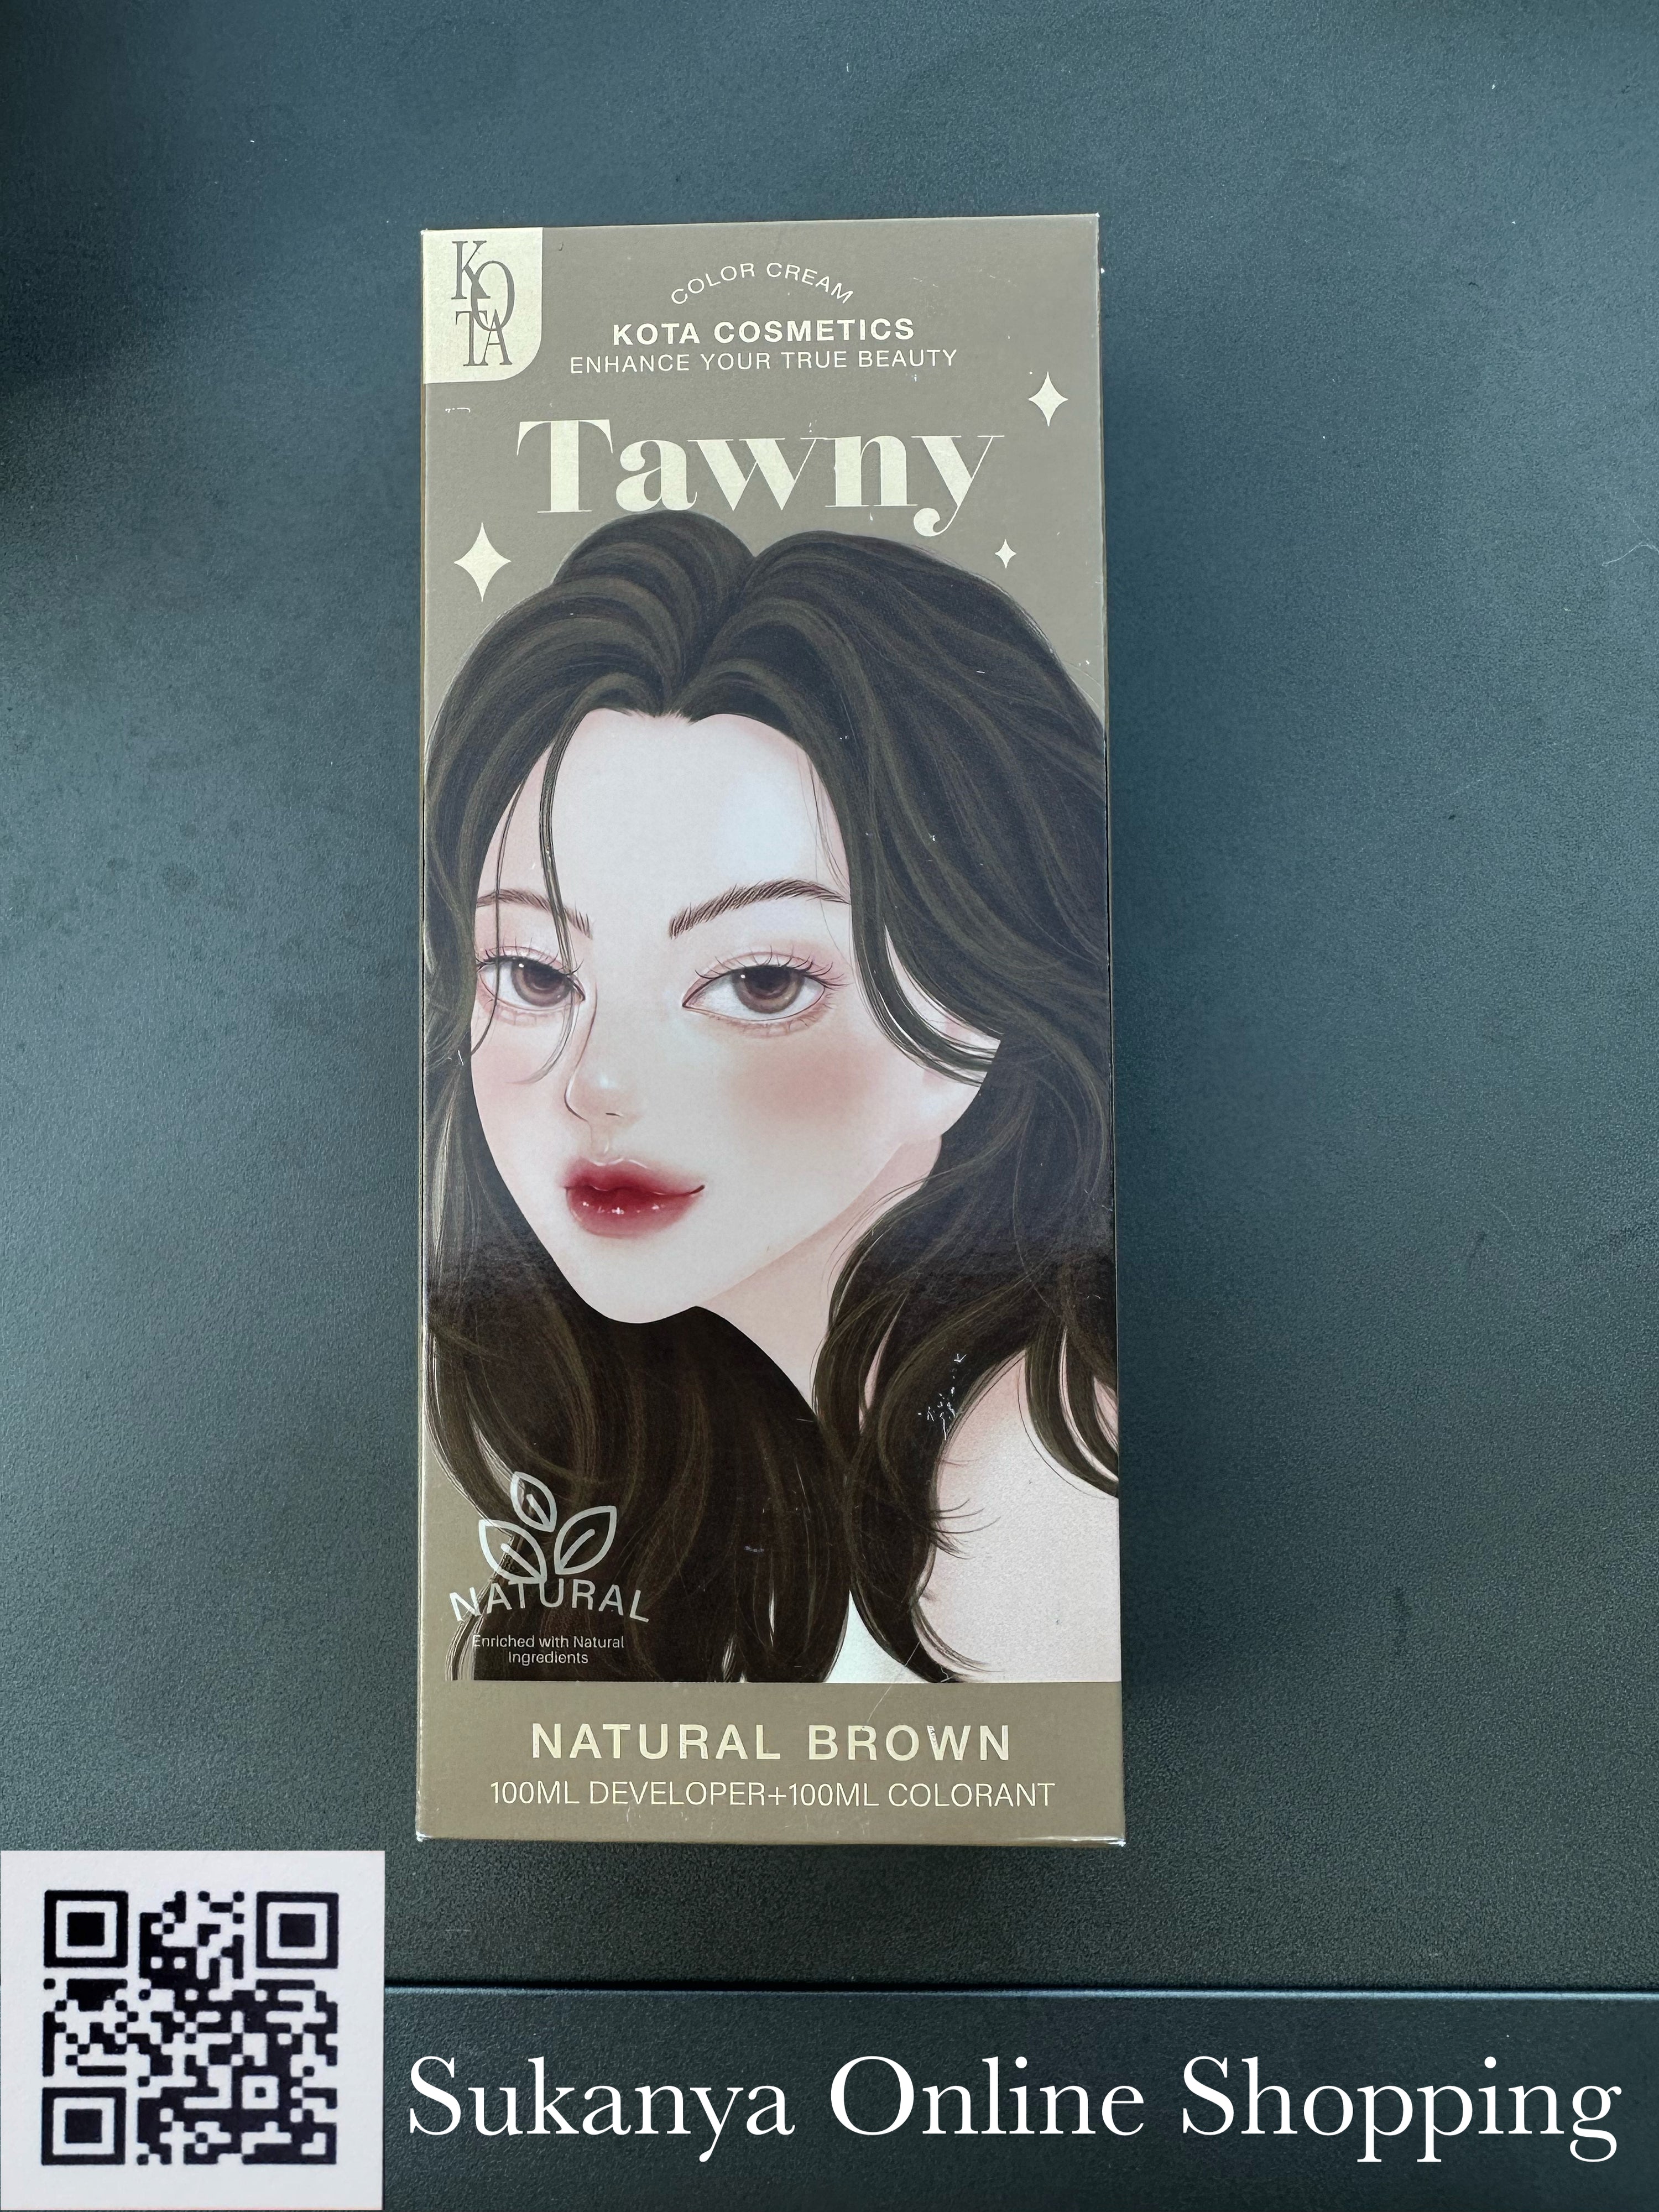 ยาย้อมผม-โคทา คอสเมติก คัลเลอร์ ครีม ทอว์นี่(เนเทอรัล บราวน์)-Kota Cosmetic Color Cream Tawny (Natural Brown)